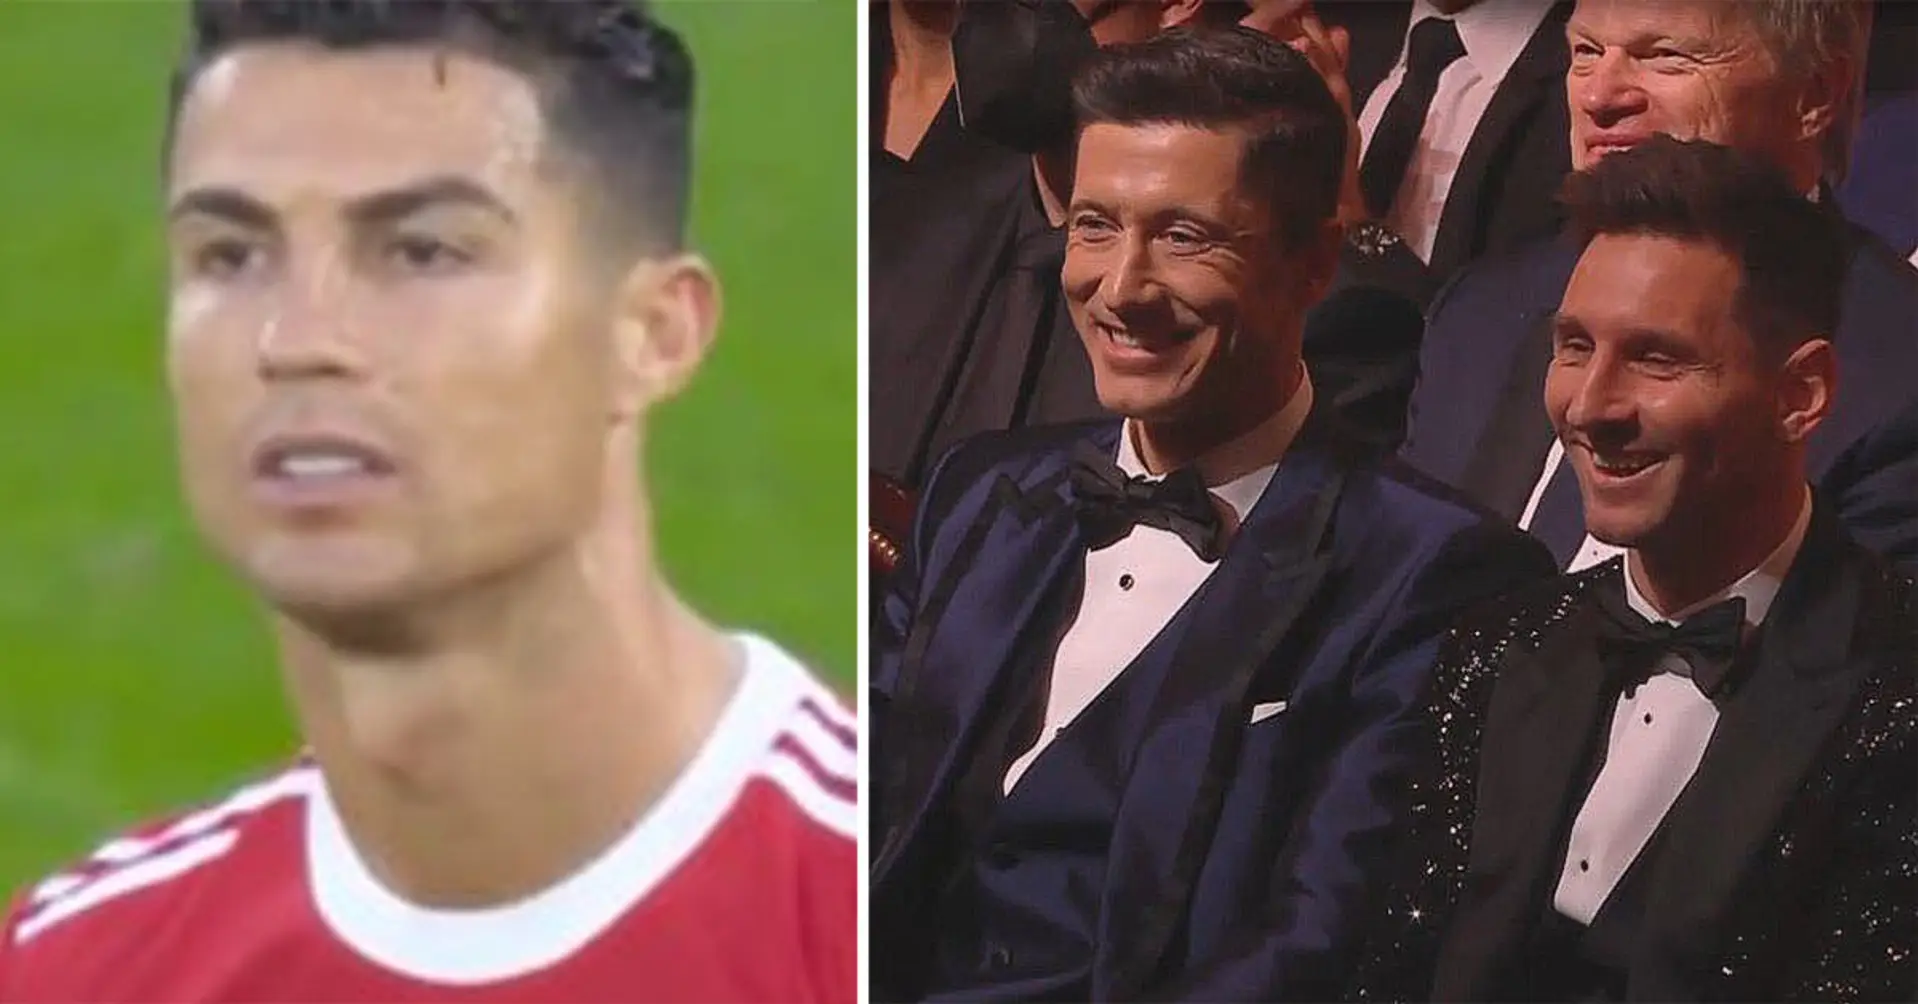 France Football trollea a Cristiano durante la ceremonia: las cámaras captan la reacción de Messi y Mbappé